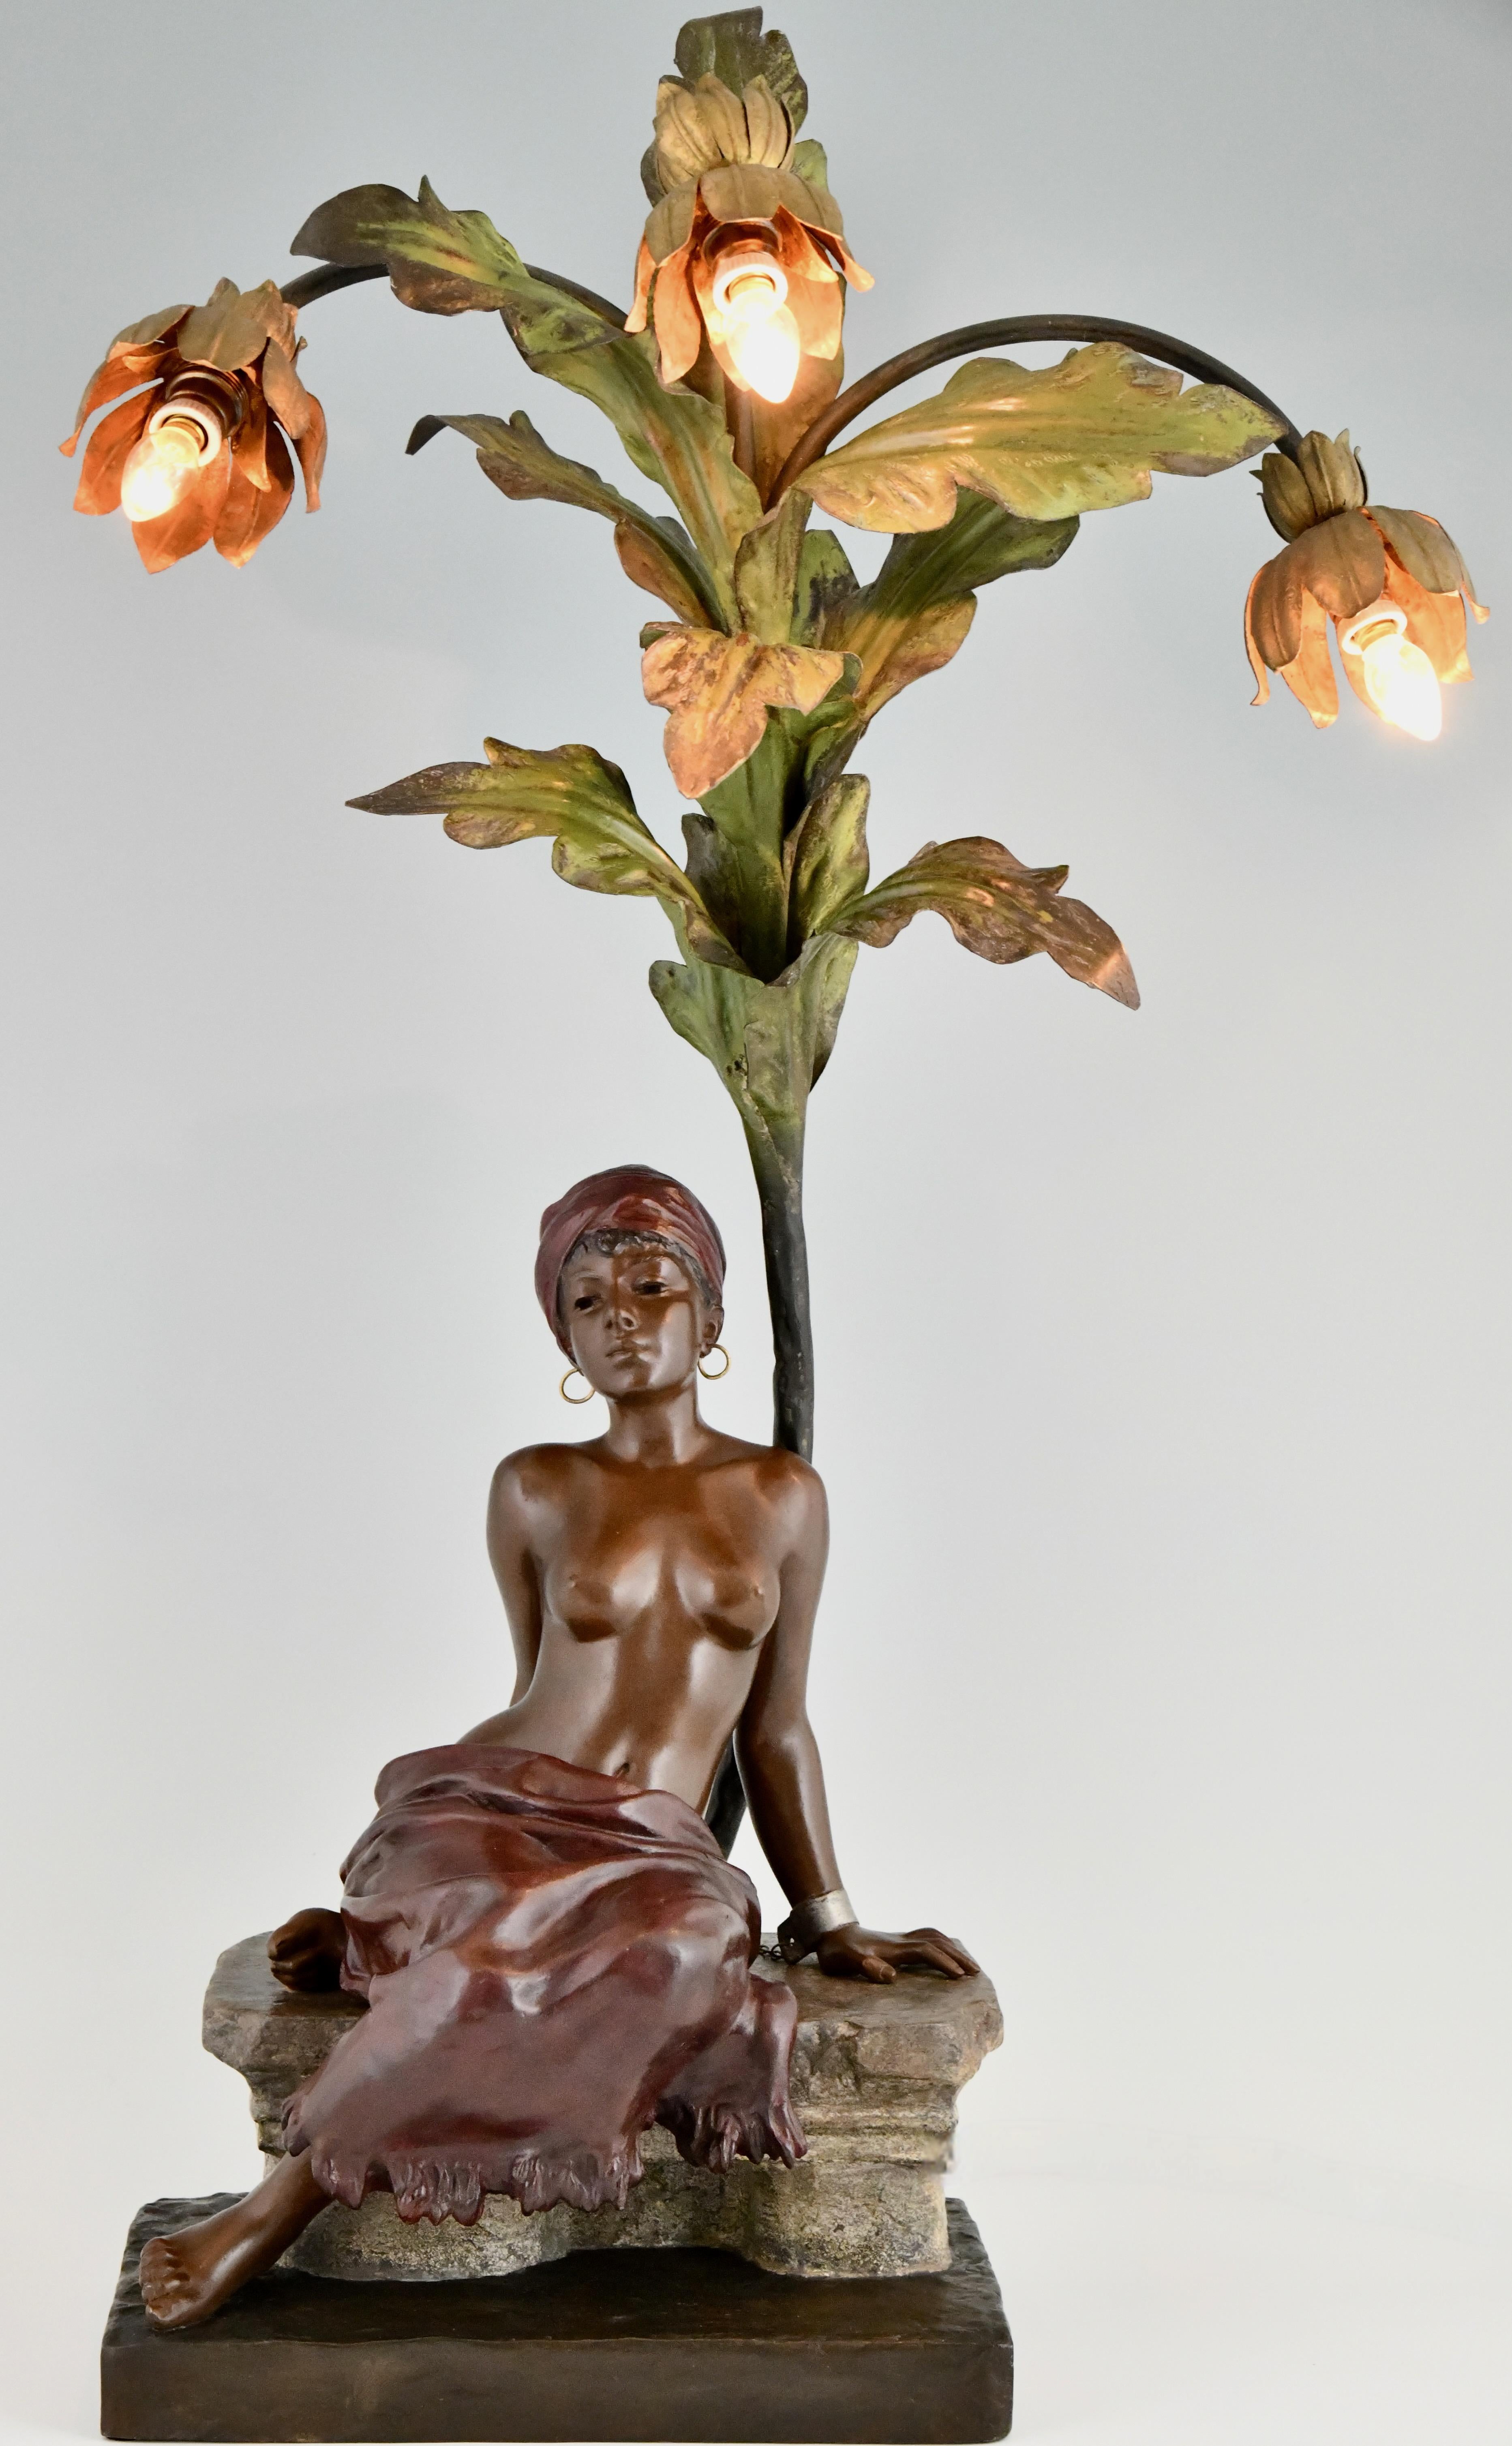 Jugendstillampe Sklavin unter Palme von Emmanuel Villanis, abnehmbarer Rock, erotisch. 
Kunstmetall, kalt lackierte Patina. Frankreich 1900. 
H. 82 cm. 
Eine Sklavin sitzt unter einer Palme, ihre Hände sind auf dem Rücken gefesselt. 
Sie trägt